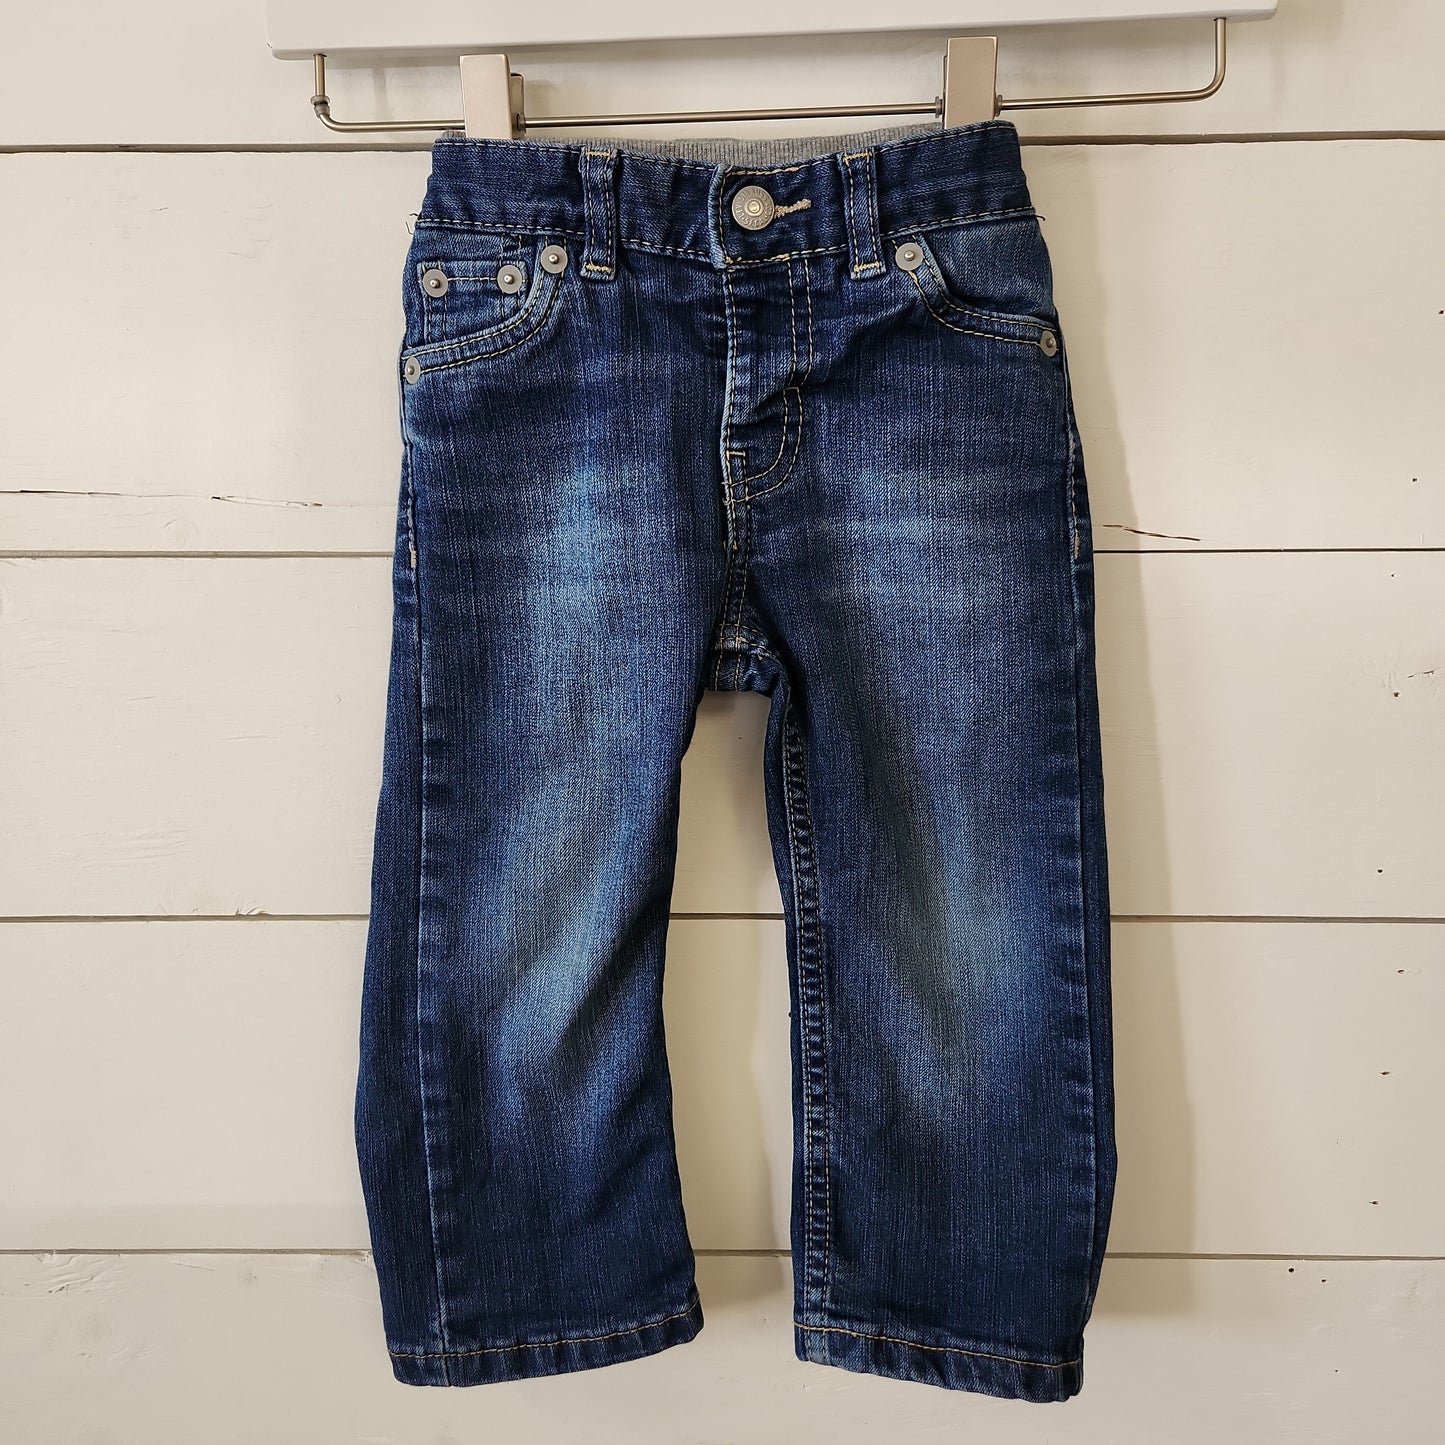 Size 18m | Levi's Denim Jeans